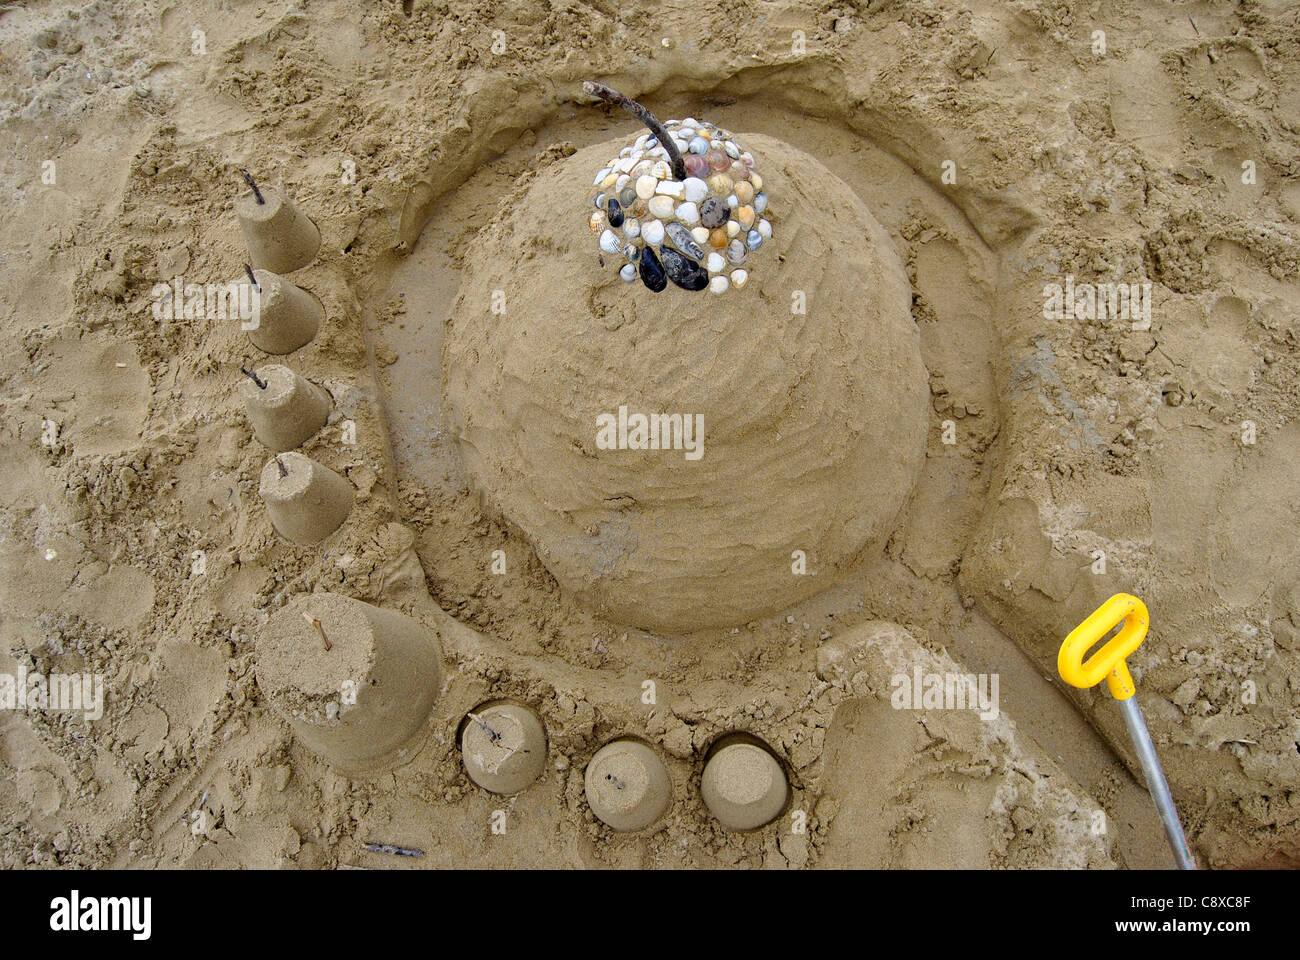 La spiaggia dei bambini giocattoli - Benne, spade e la pala sulla sabbia in una giornata di sole Foto Stock